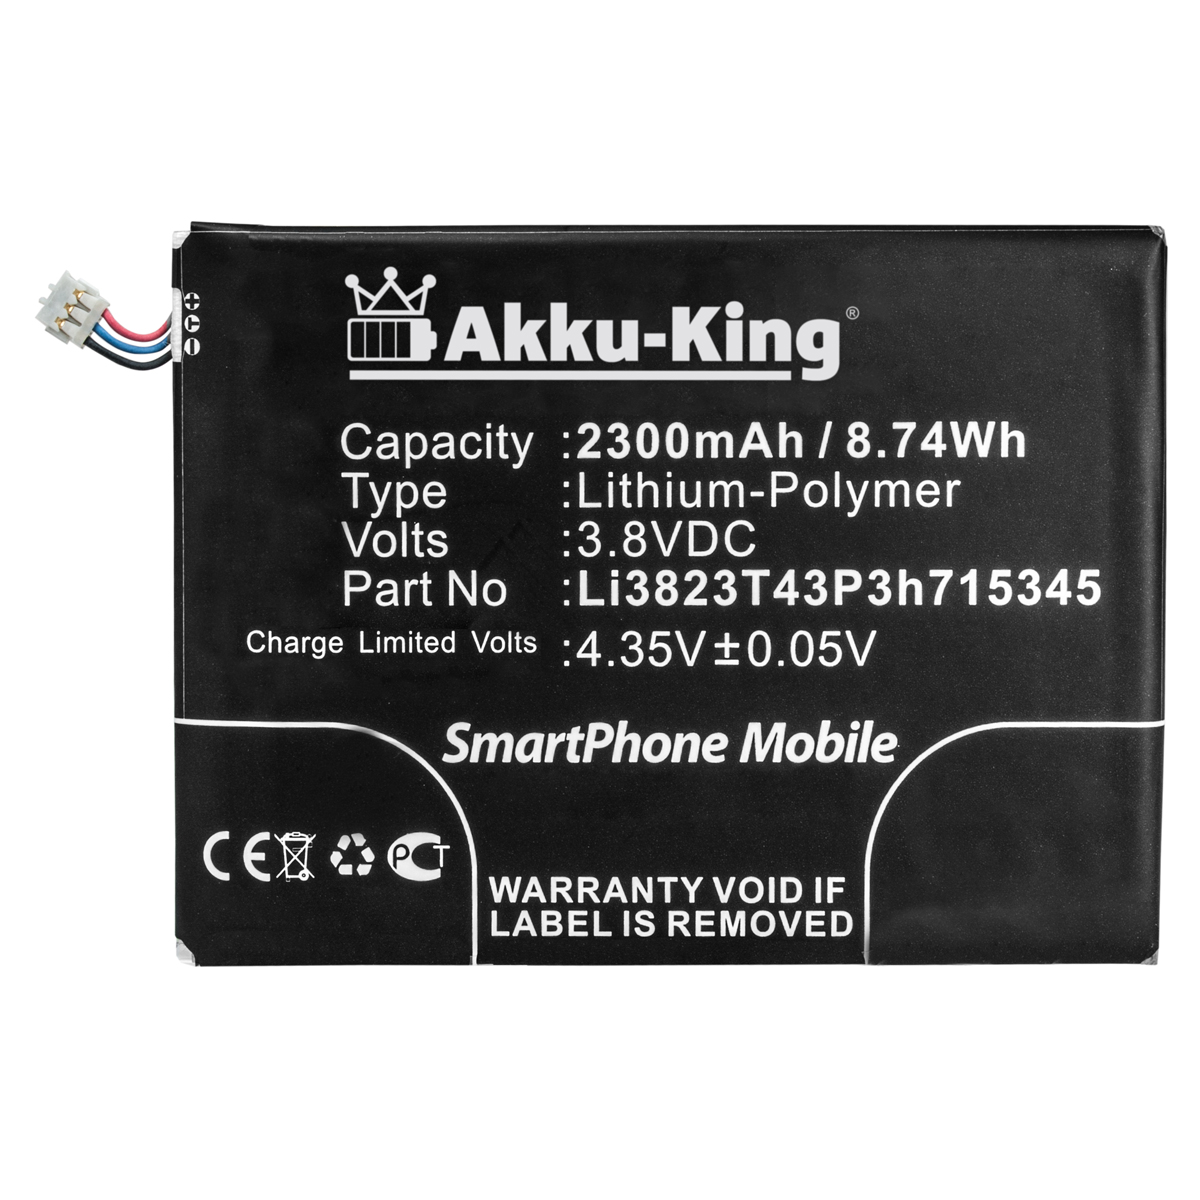 ZTE Handy-Akku, Akku Volt, 2300mAh kompatibel AKKU-KING 3.8 mit Li-Polymer LI3823T43P3H715345